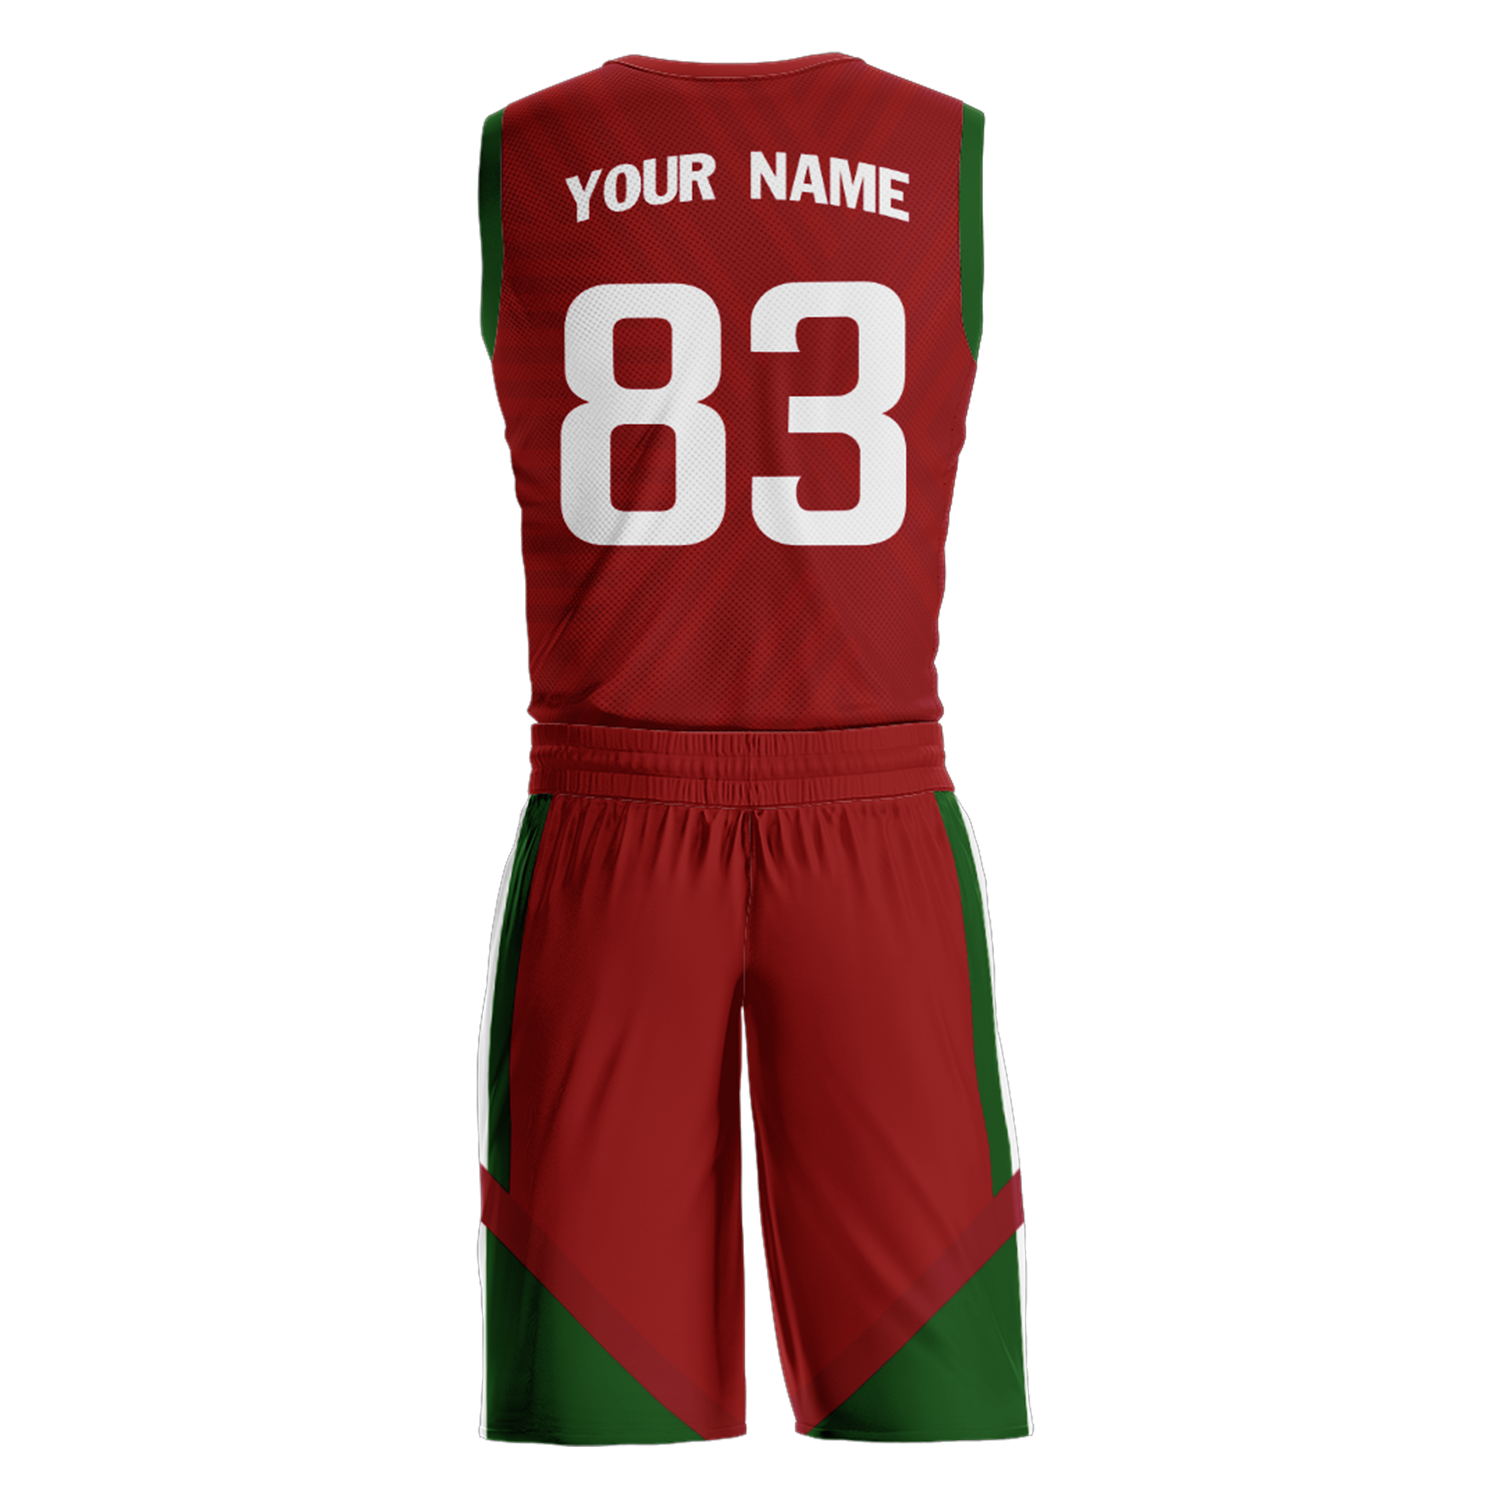 Trajes de baloncesto del equipo de Portugal personalizados